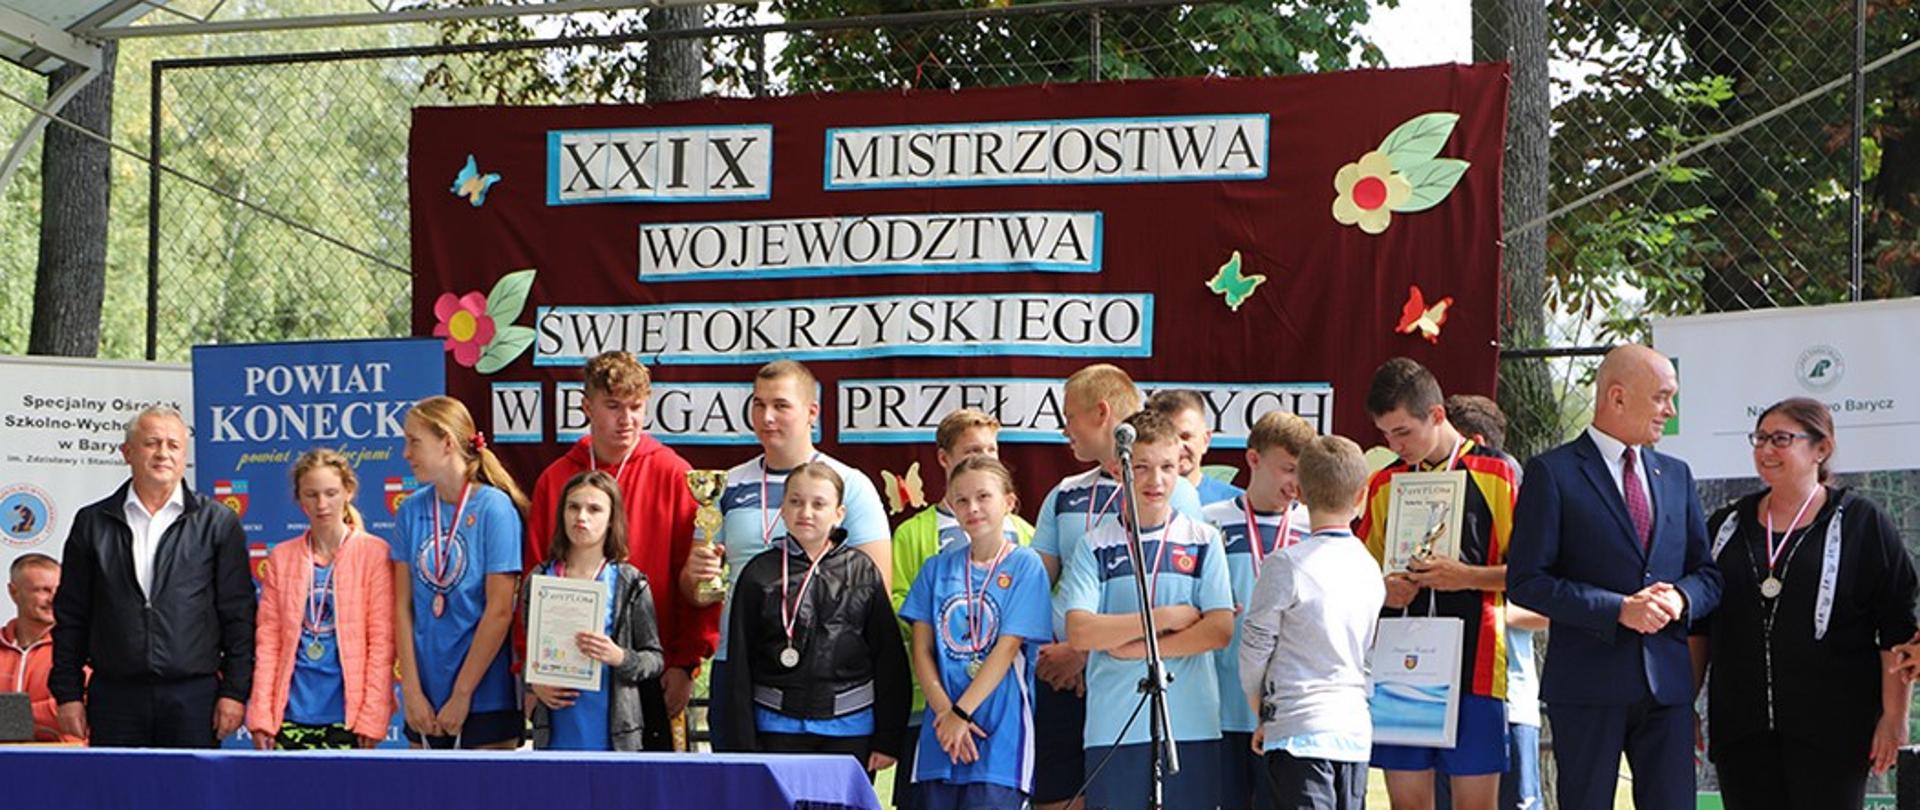 XXIX Mistrzostwa Województwa Świętokrzyskiego w Biegach Przełajowych w SOSW w Baryczy